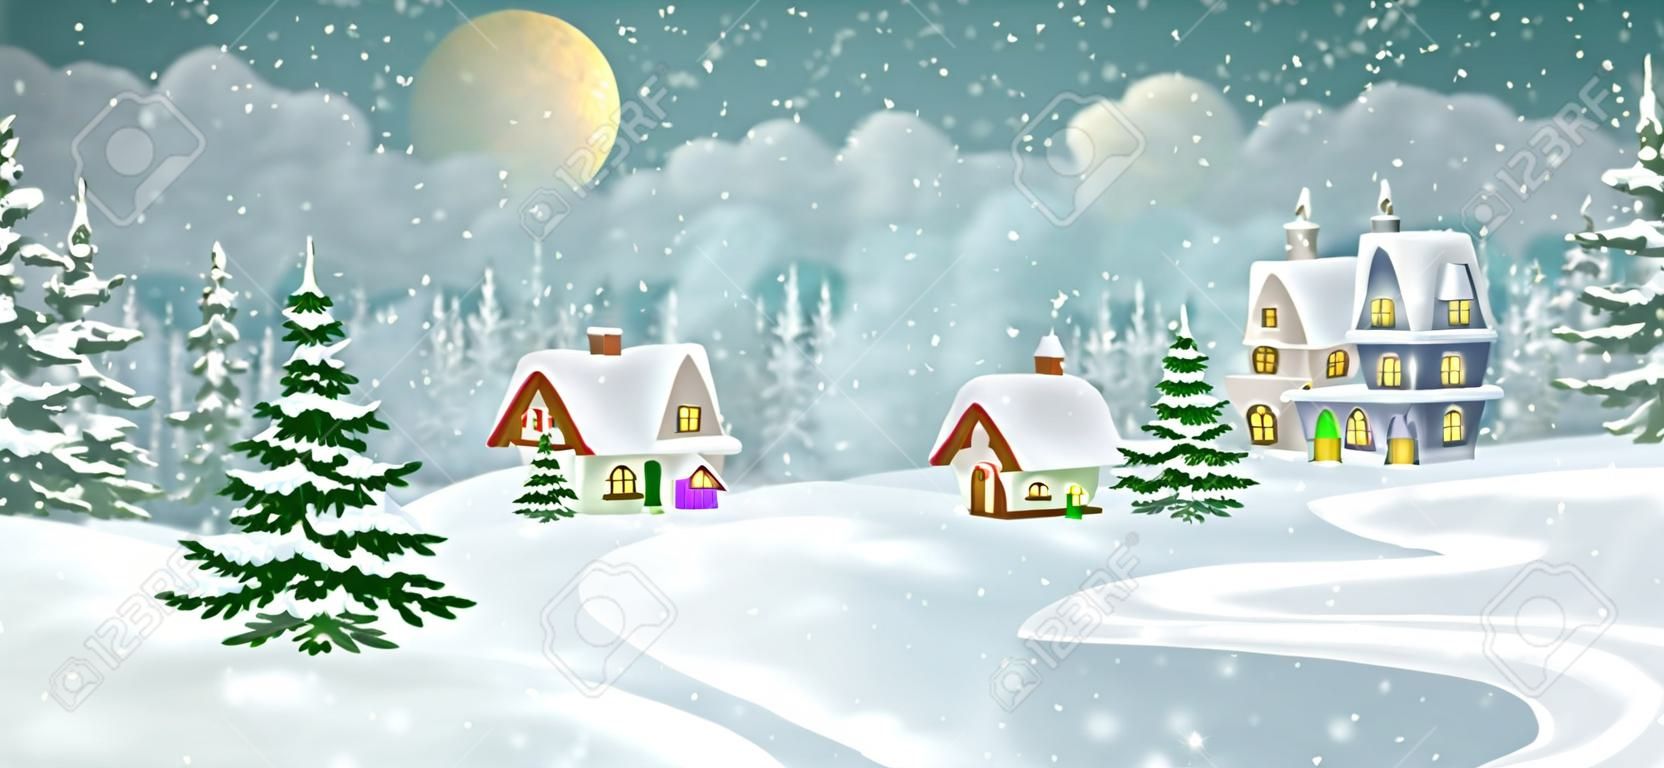 Paysage de village d'hiver avec pinède. Petites maisons de conte de fées couvertes de neige.